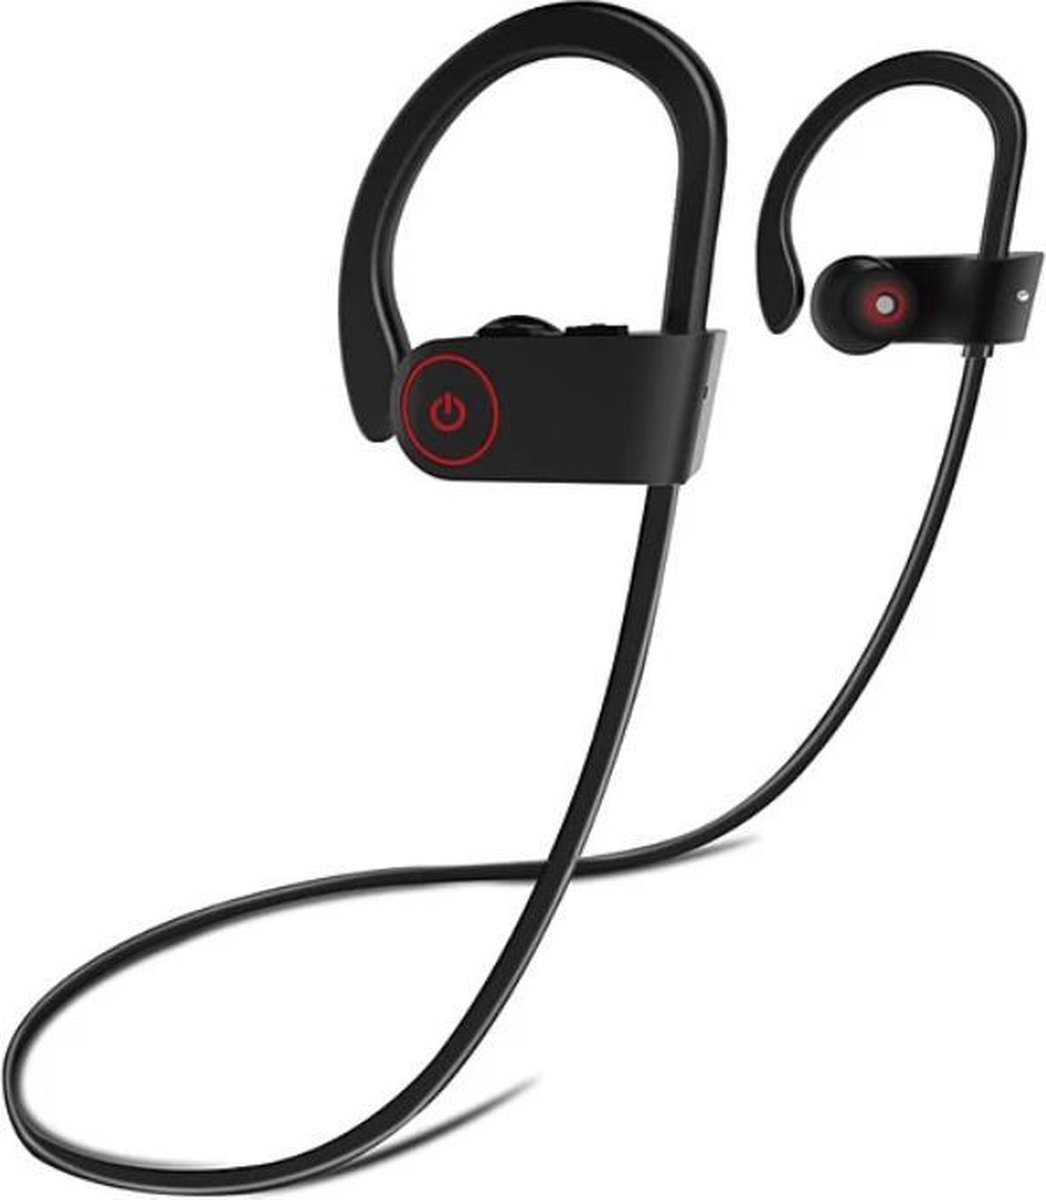 MANI Bluetooth Oordopjes Draadloos - In ear oortjes handig voor Hardlopen en Sport- Zwart/Zwart - MANI